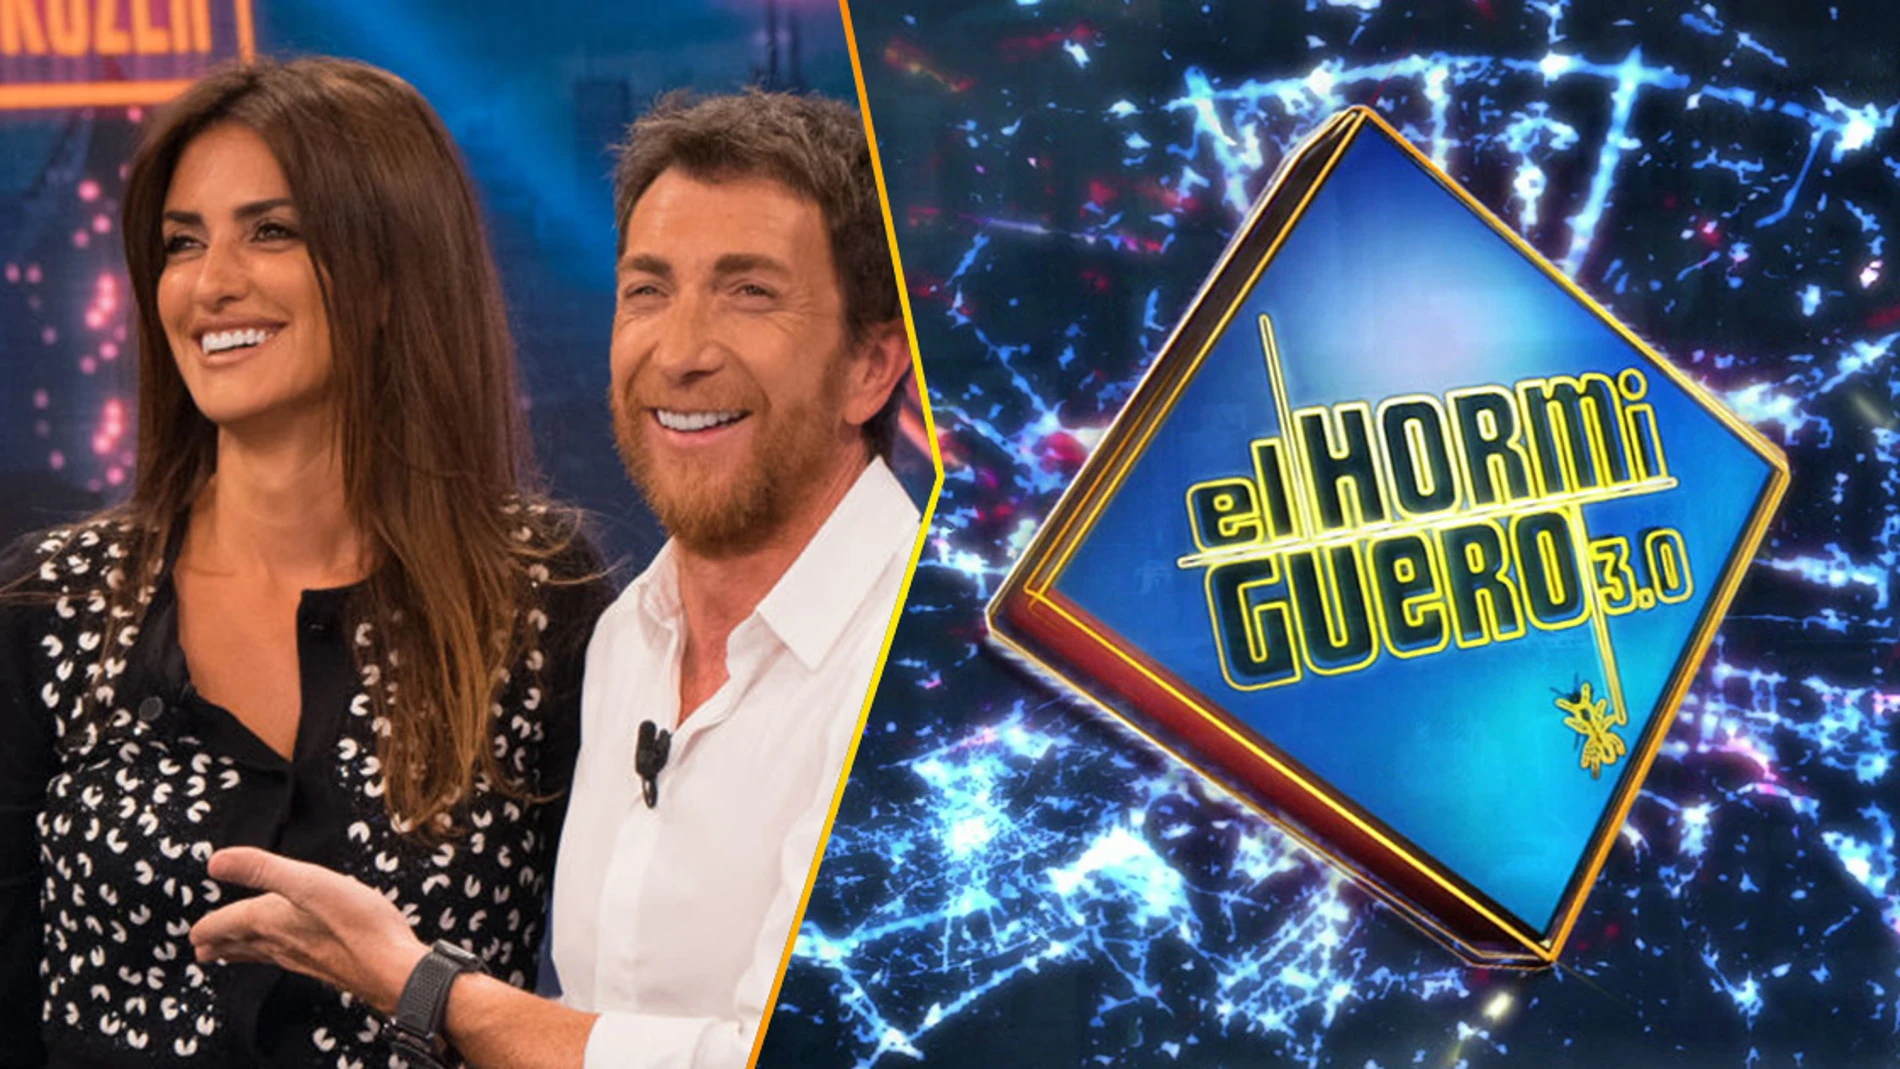 La estrella internacional Penélope Cruz inaugura el lunes la nueva temporada de 'El Hormiguero 3.0'